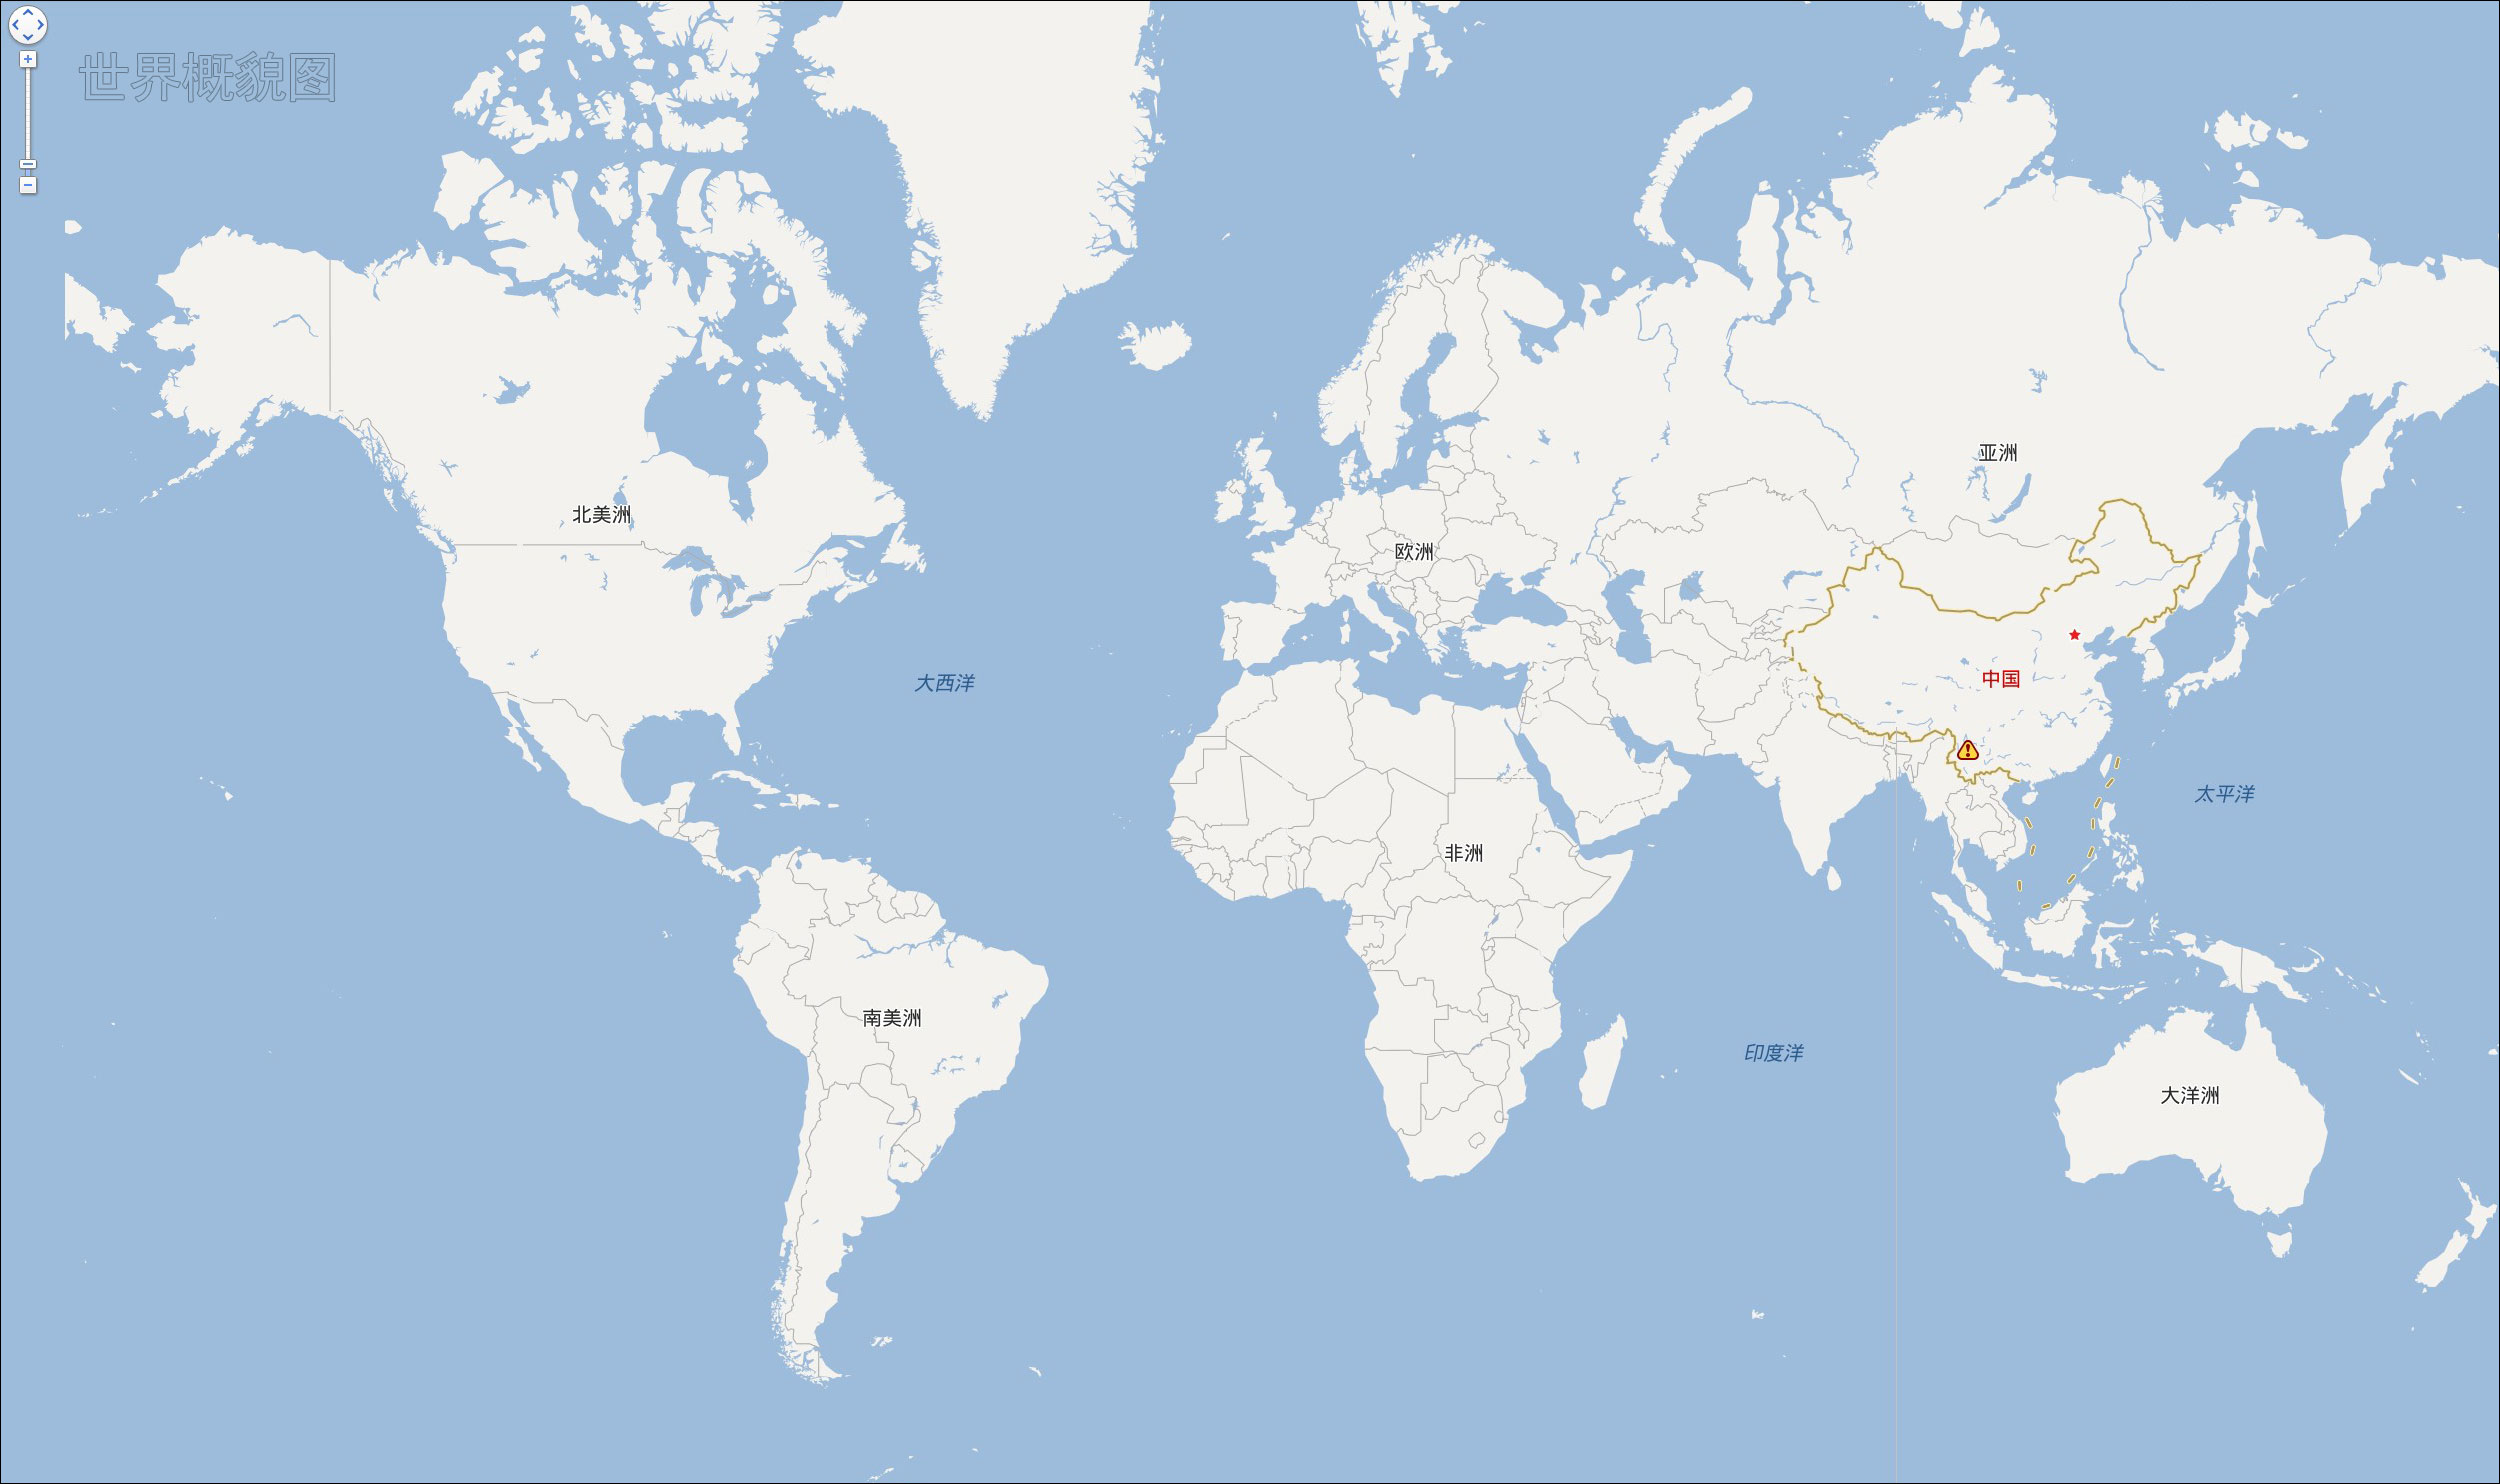 世界地图概貌图(百度地图)